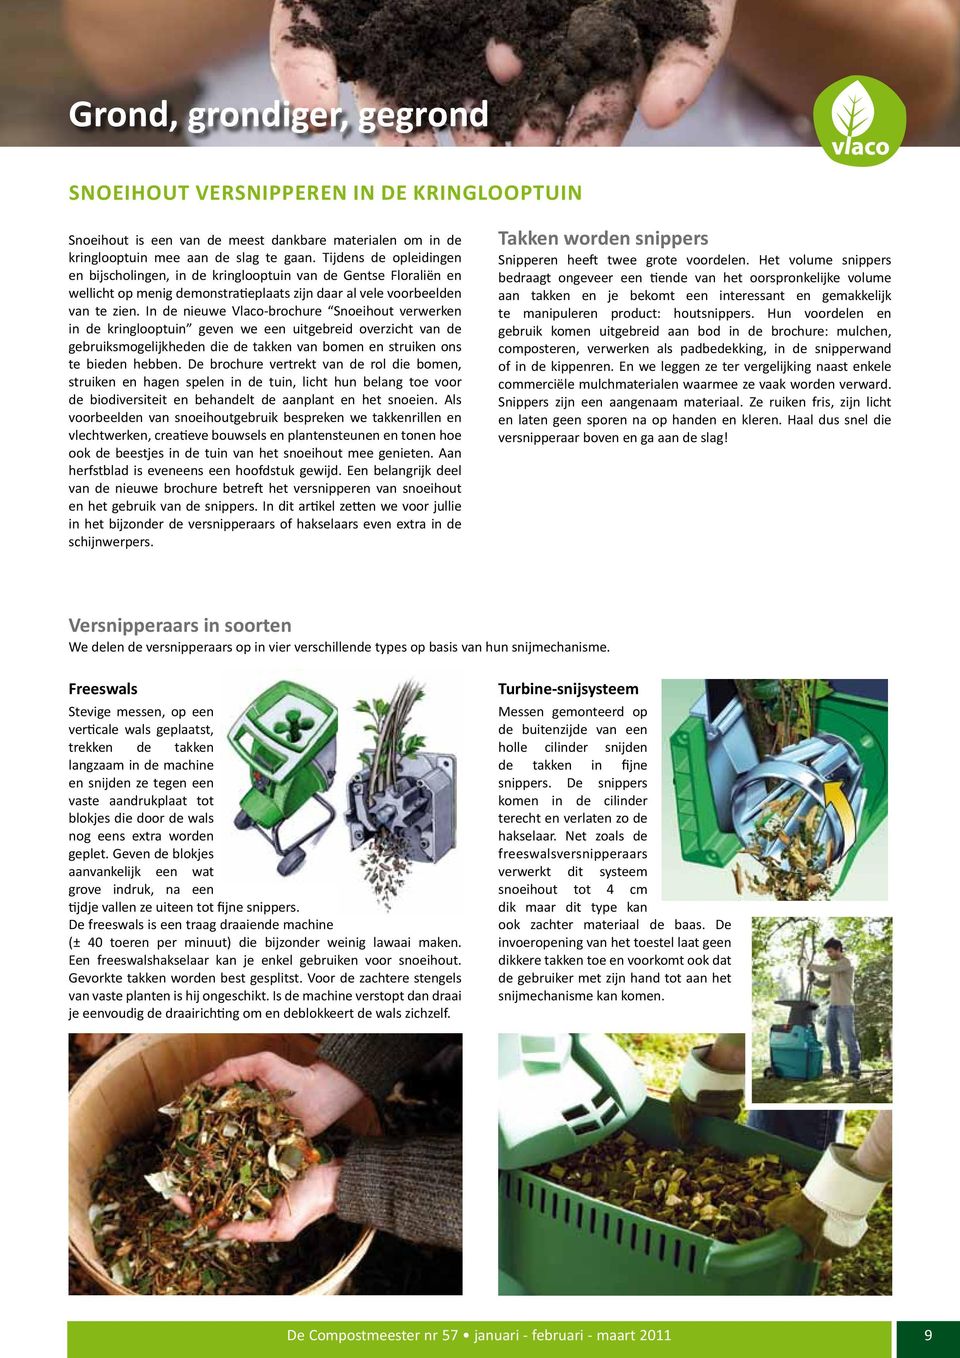 In de nieuwe Vlaco-brochure Snoeihout verwerken in de kringlooptuin geven we een uitgebreid overzicht van de gebruiksmogelijkheden die de takken van bomen en struiken ons te bieden hebben.